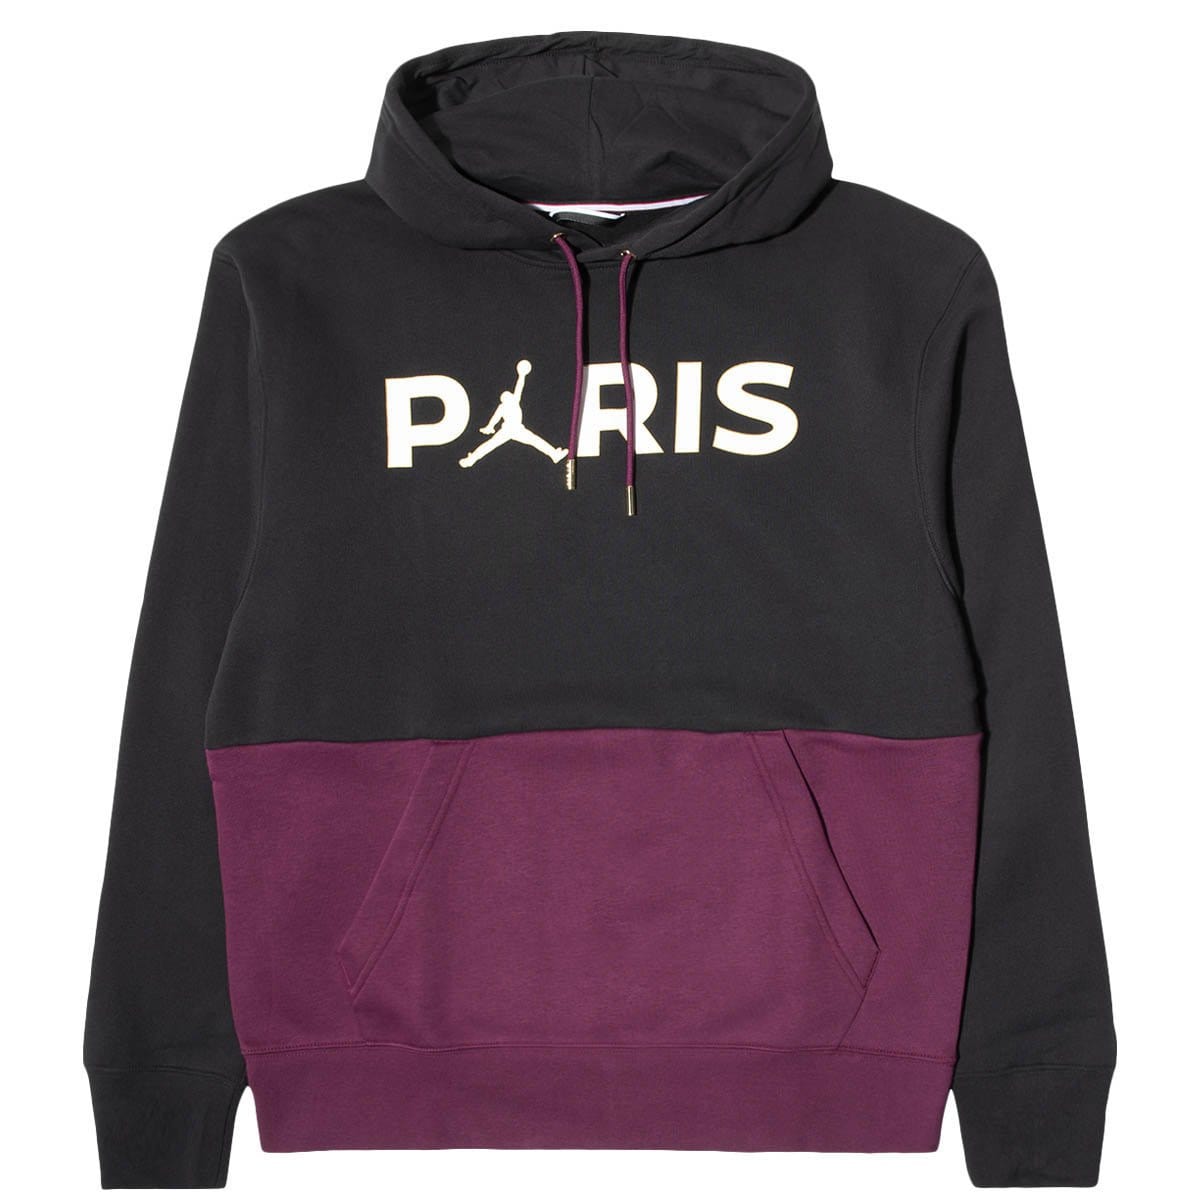 Air Jordan Hoodies & Sweatshirts Paris Saint Germain FLEECE PULLOVER HOODIE